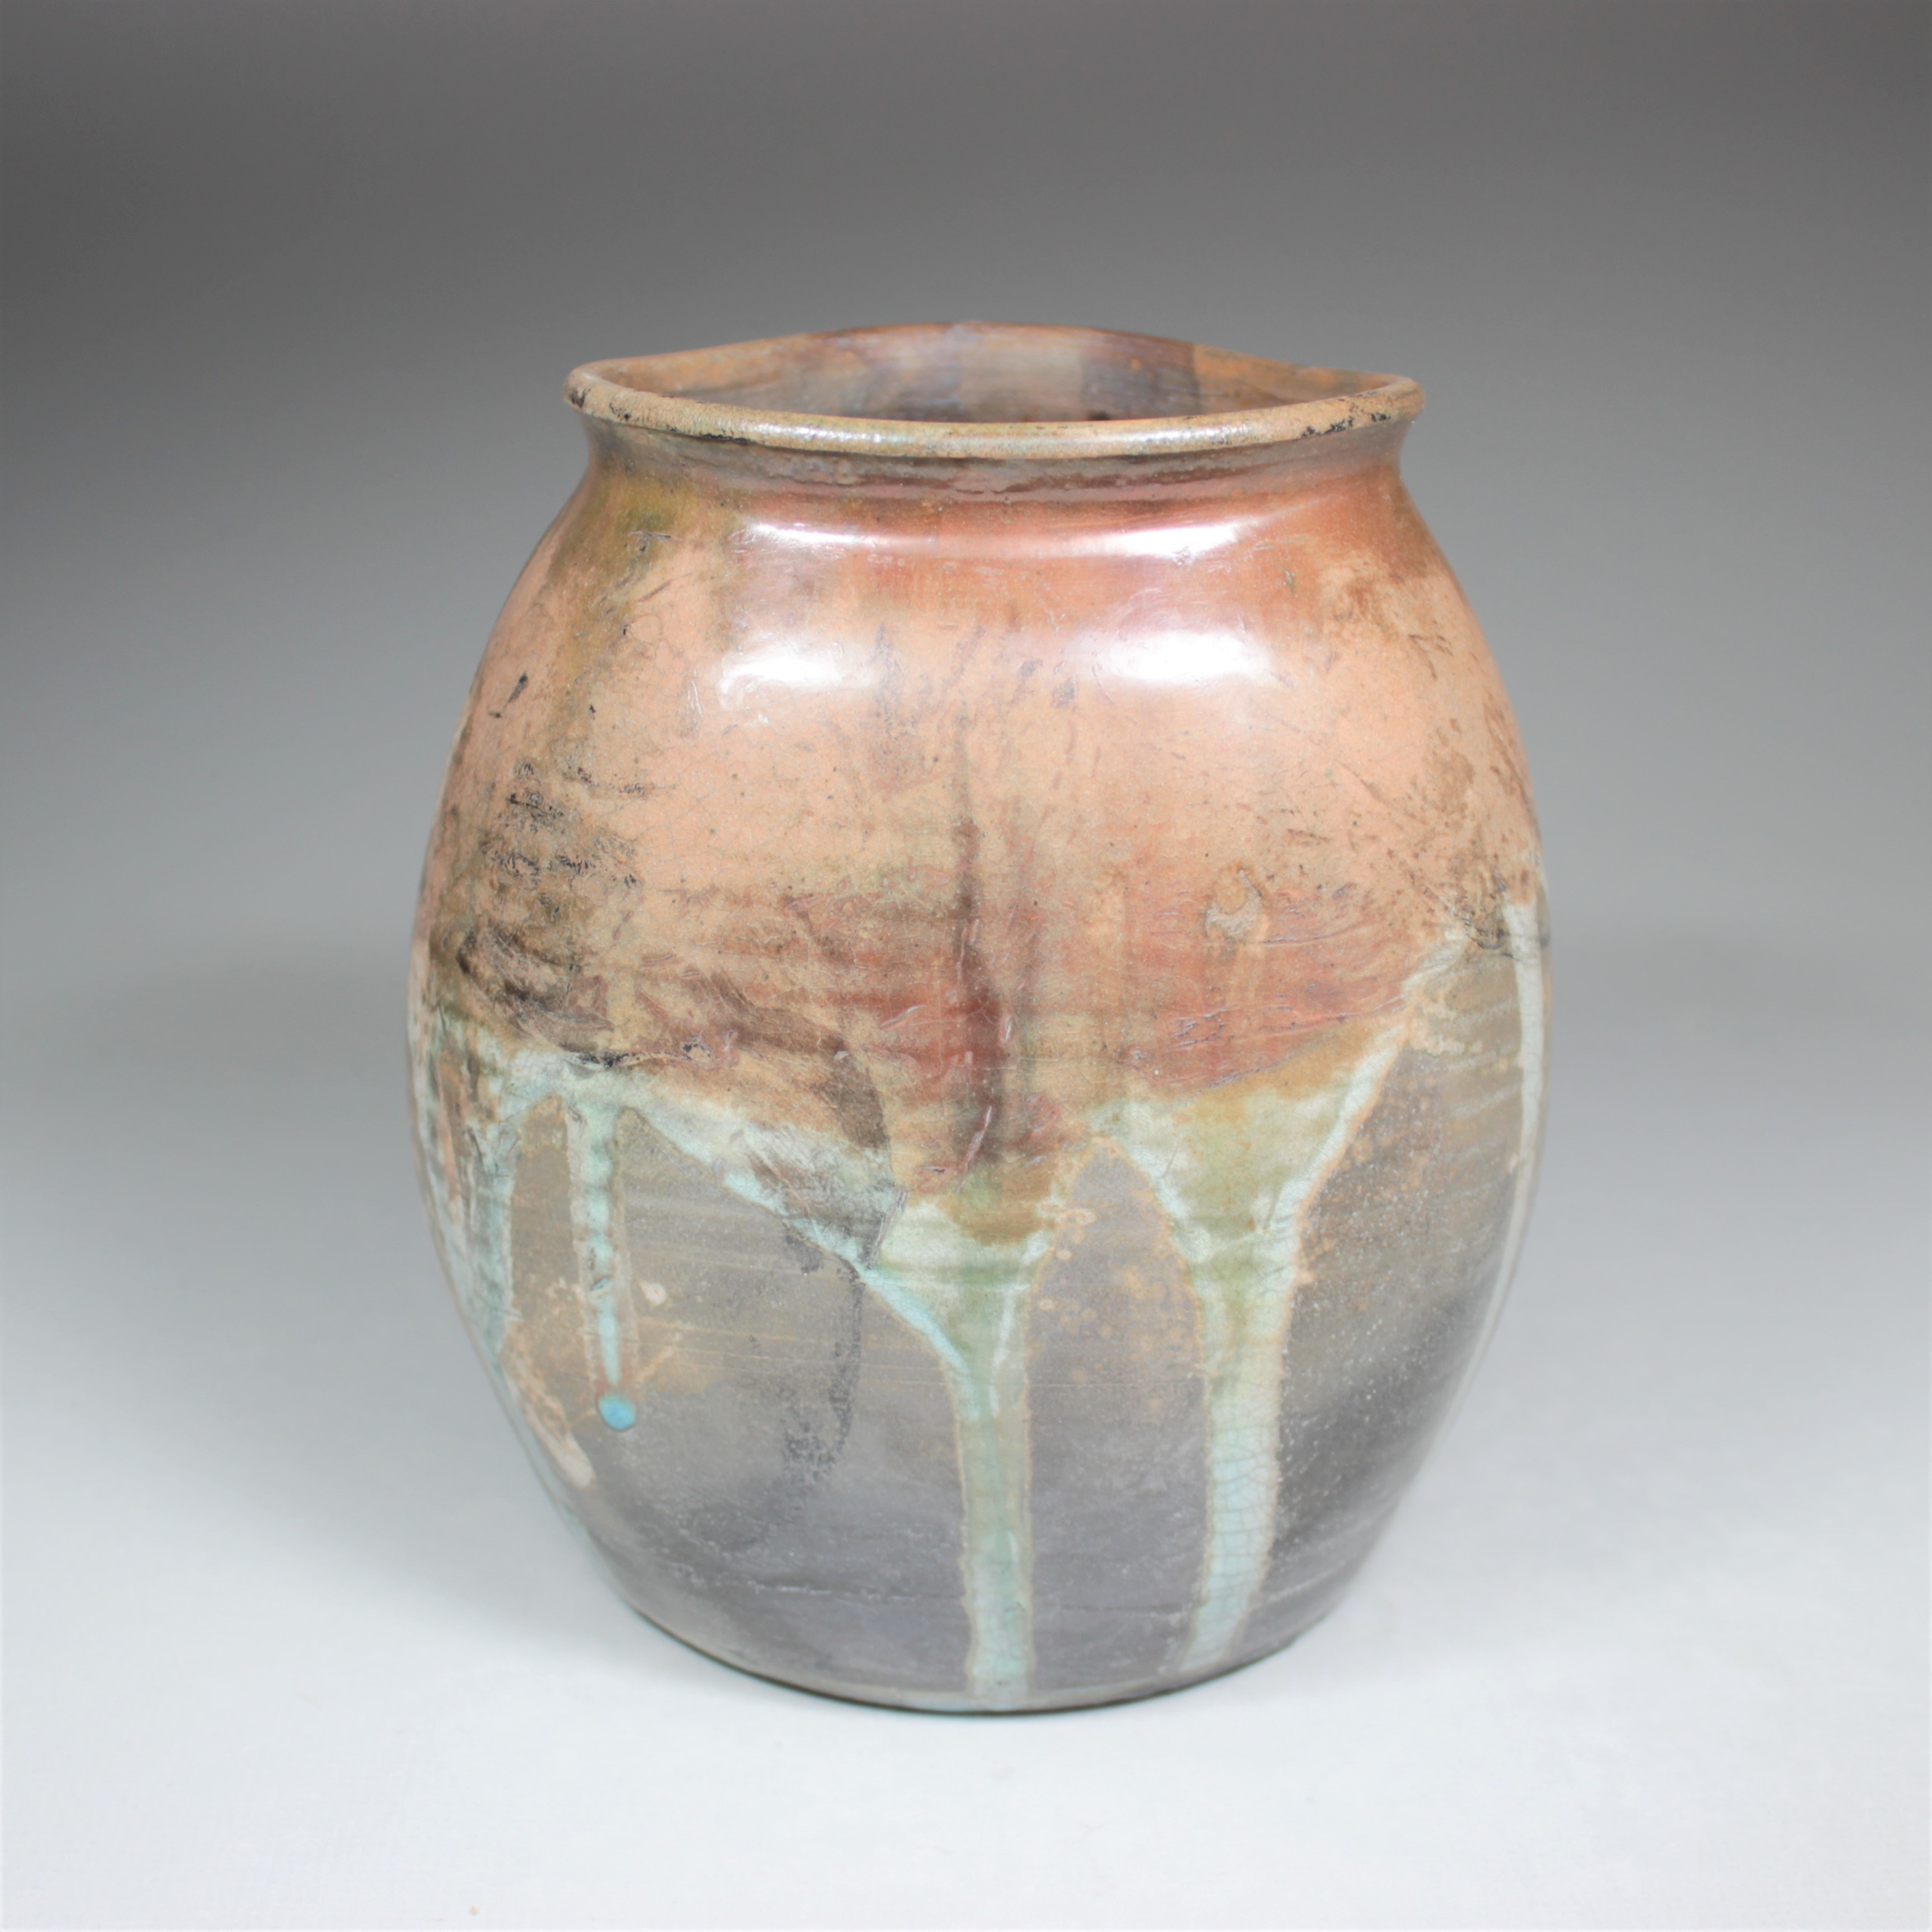 Handmade Raku Pottery - From Miry Clay Pottery